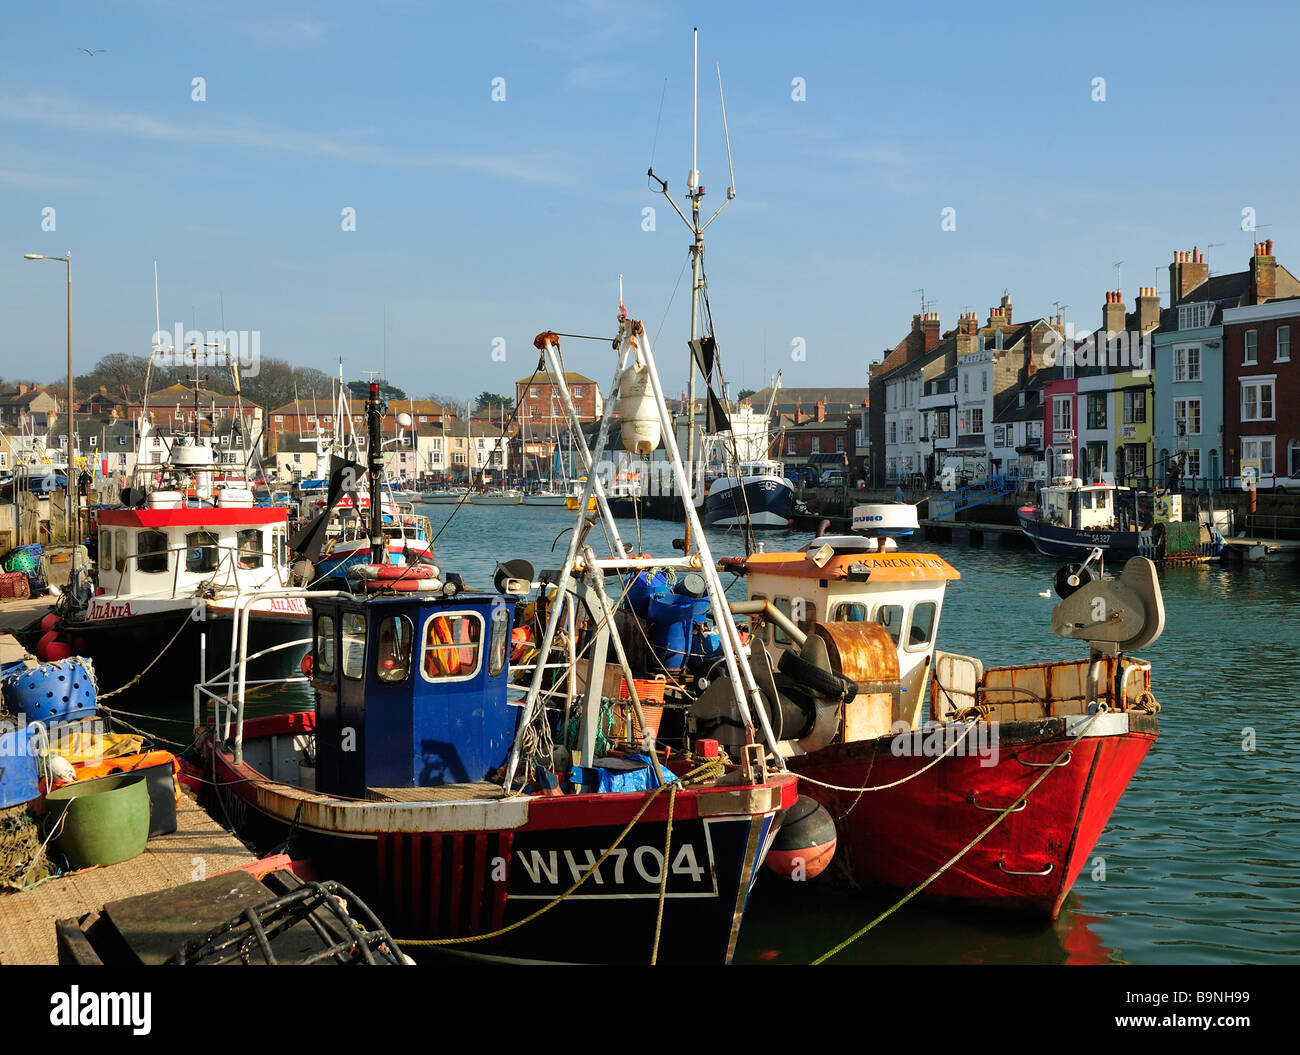 WEYMOUTH, DORSET, Royaume-Uni - 20 MARS 2009 : bateaux de pêche dans le vieux port de Weymouth Banque D'Images